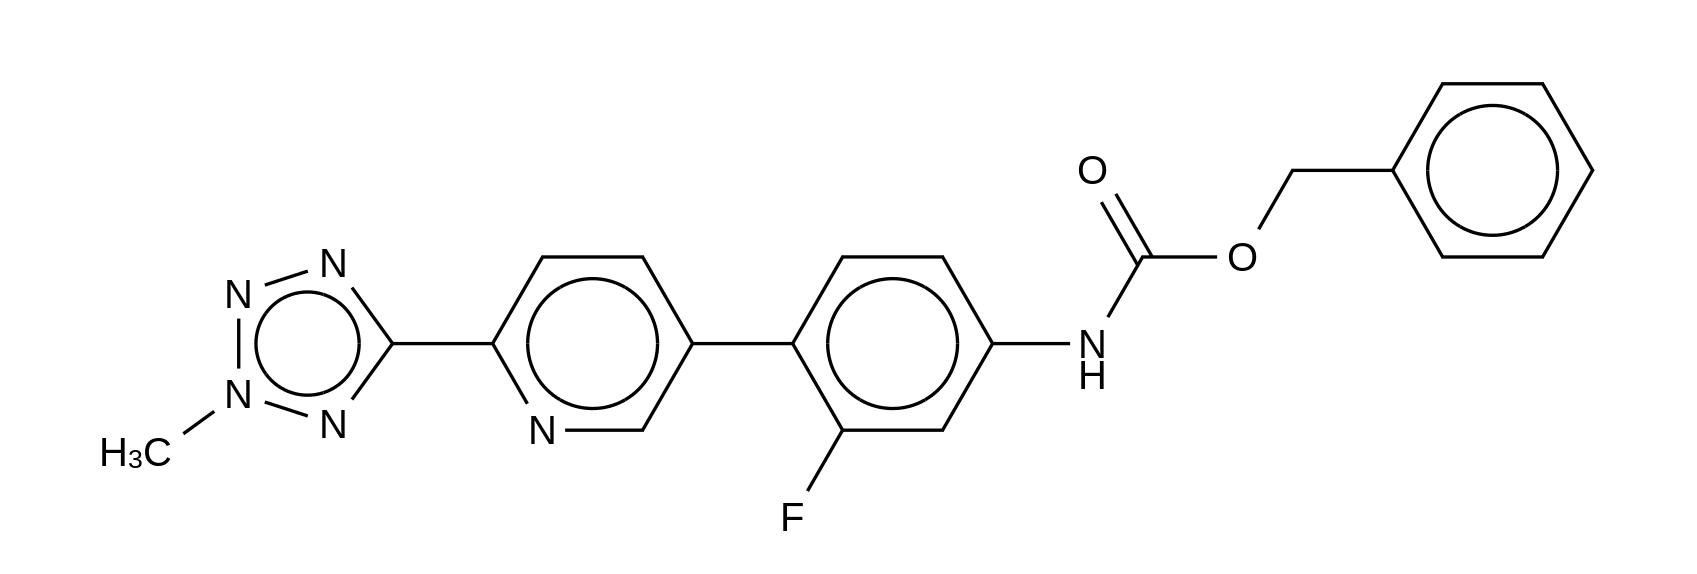 N-[3-Fluoro-4-[6-(2-methyl-2H-tetrazol-5-yl)-3-pyridinyl]phenyl]carbamic acid phenylmethyl ester